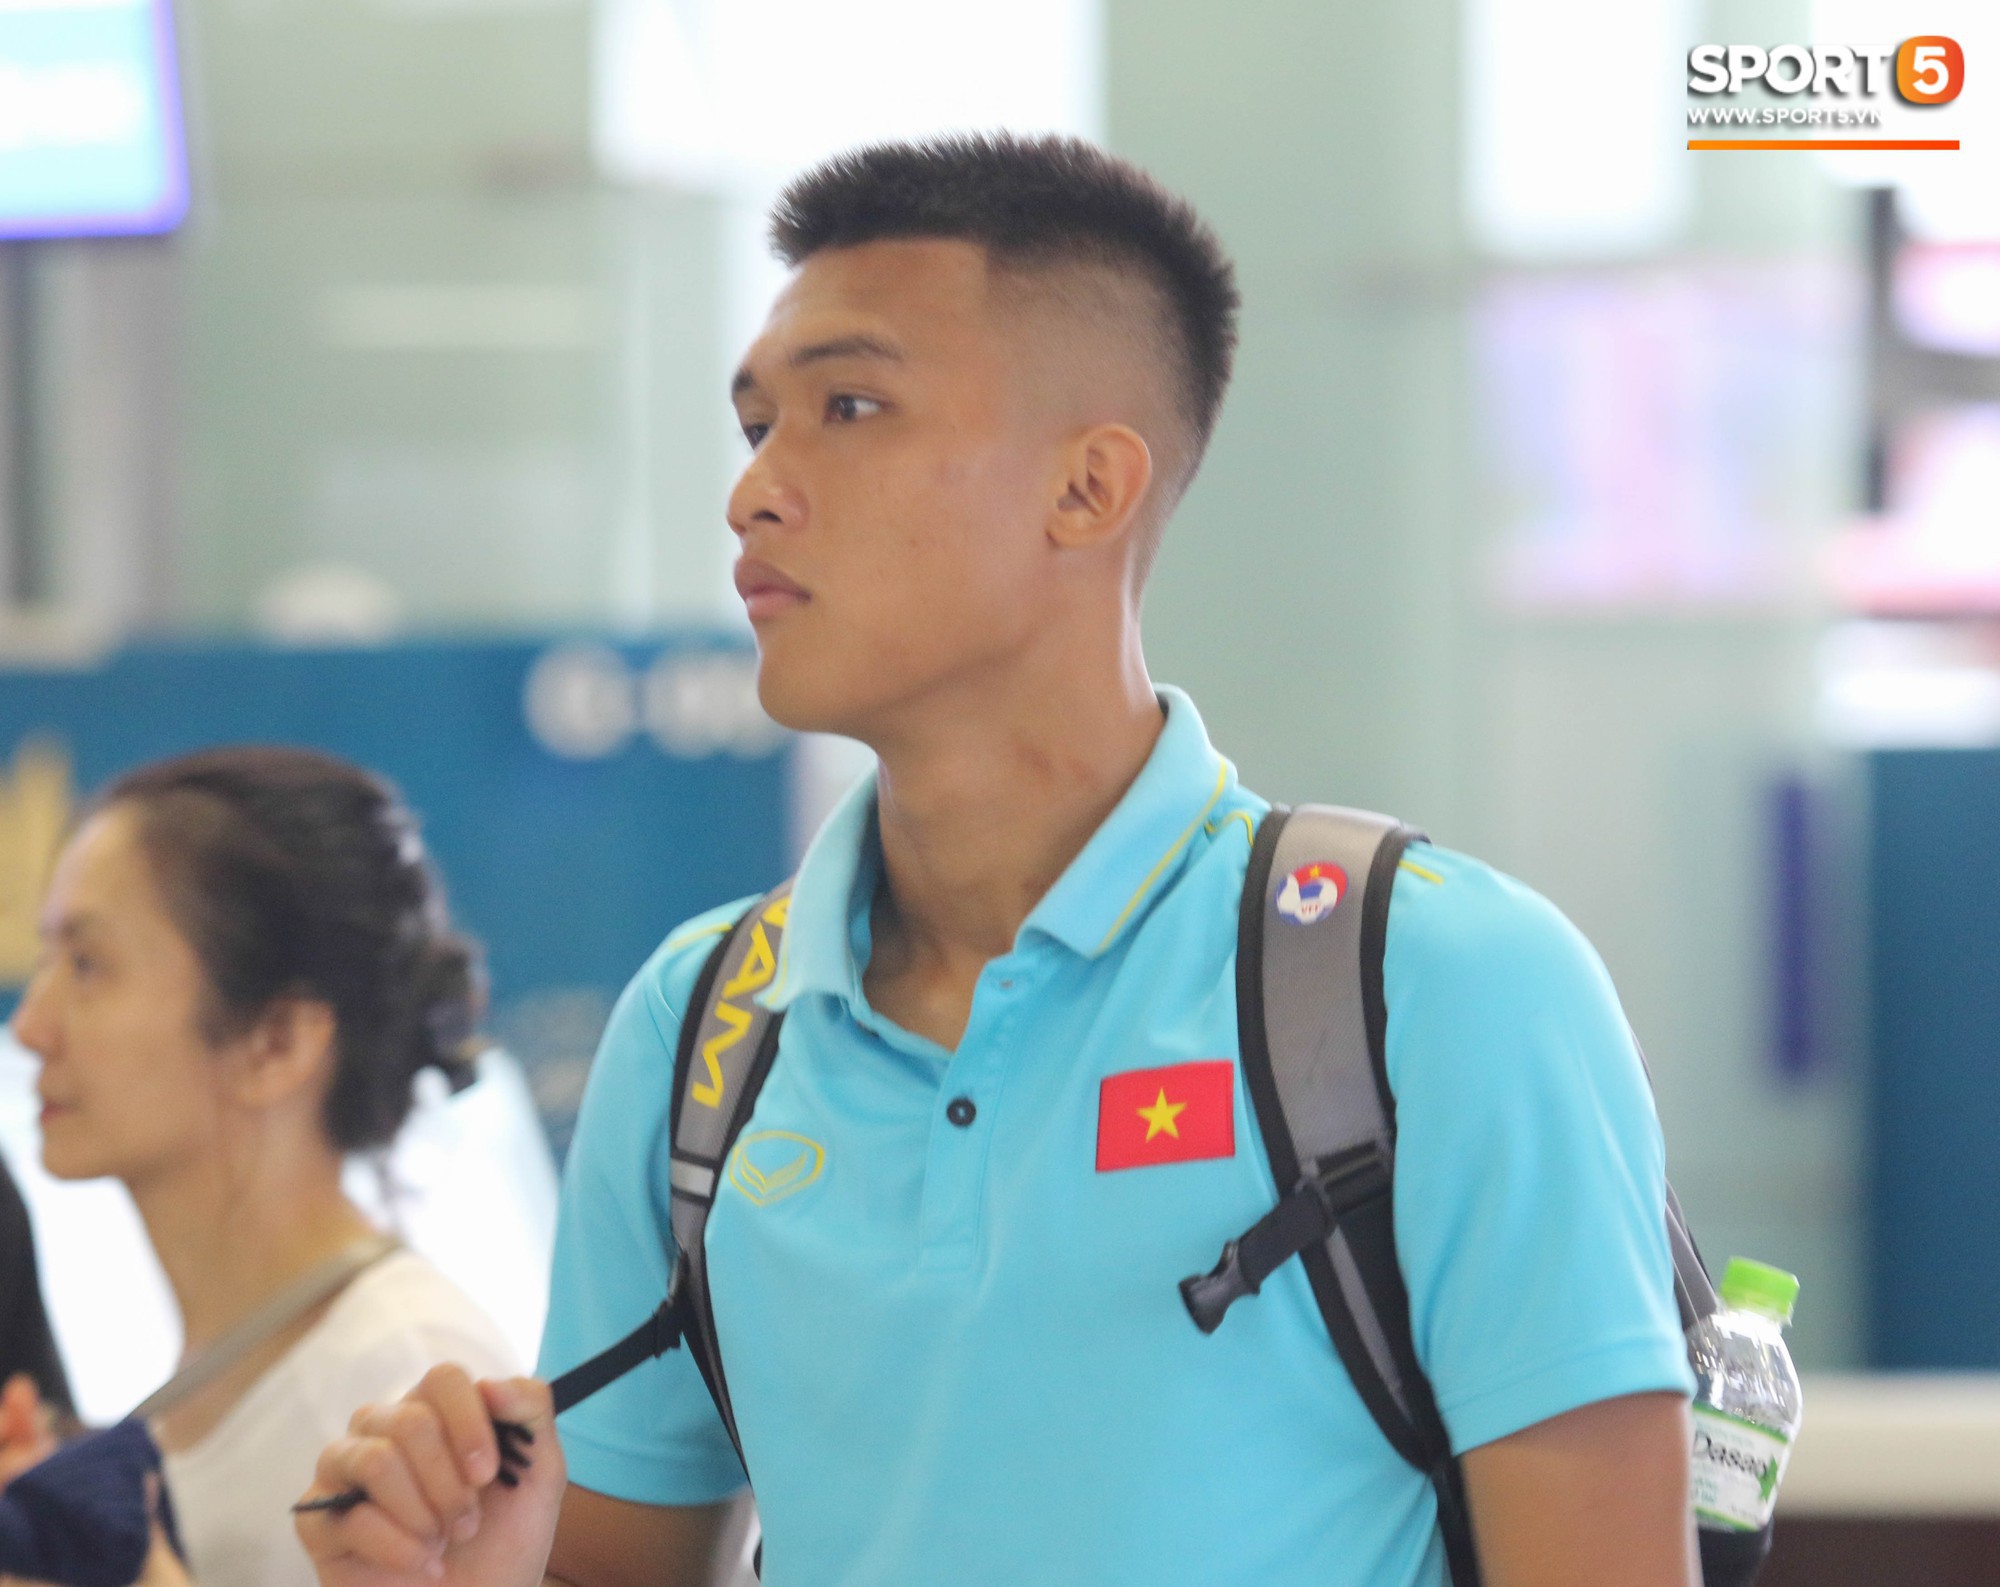 Dàn tuyển thủ U18 Việt Nam rủ nhau đảo ngói khá bảnh bao trước giờ lên đường tập huấn tại Nhật Bản - Ảnh 6.